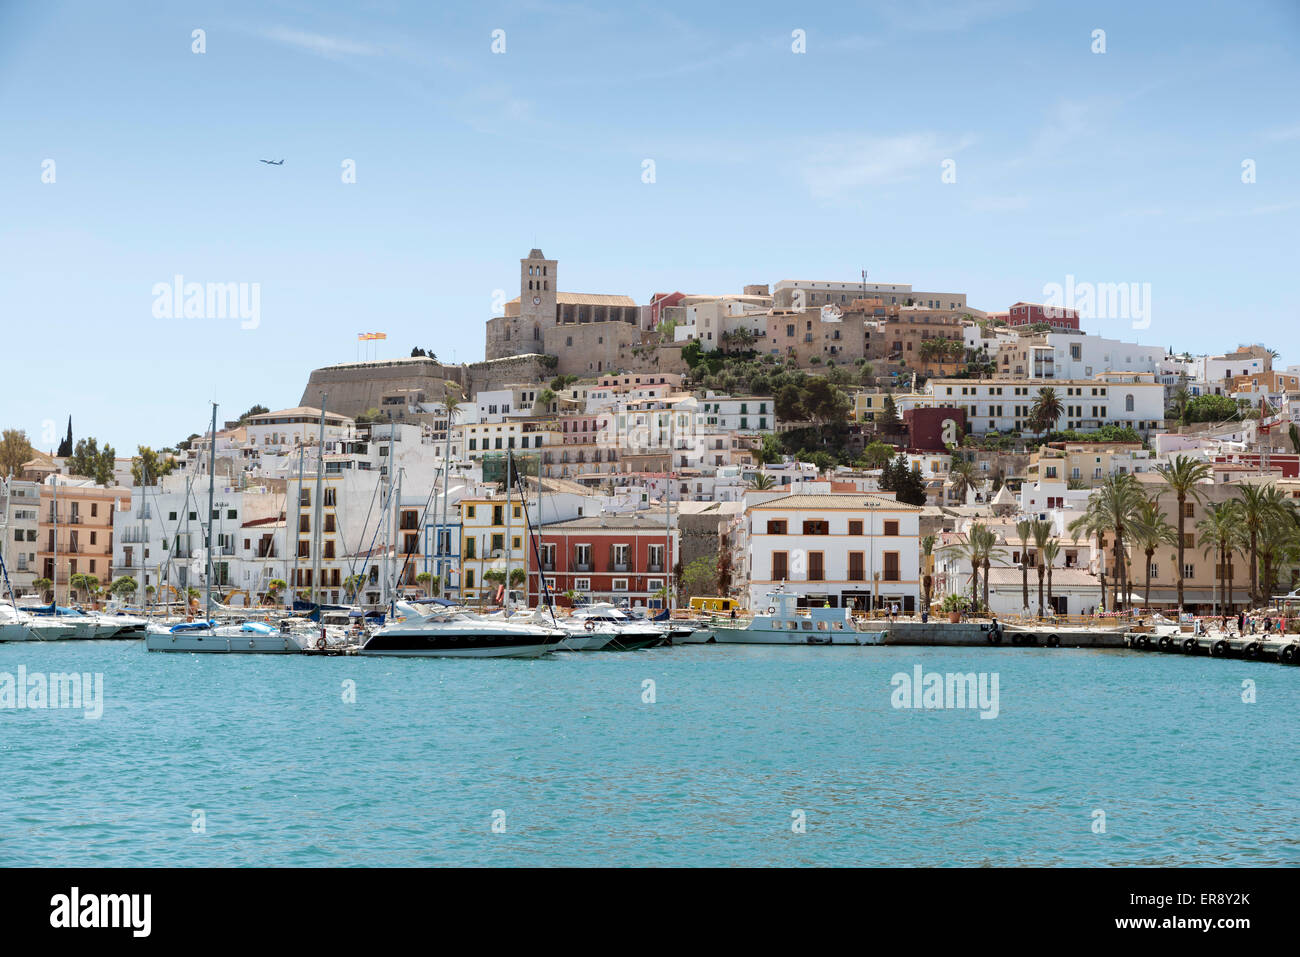 Ibiza (Eivissa) town with blue Mediterranean sea city view Stock Photo